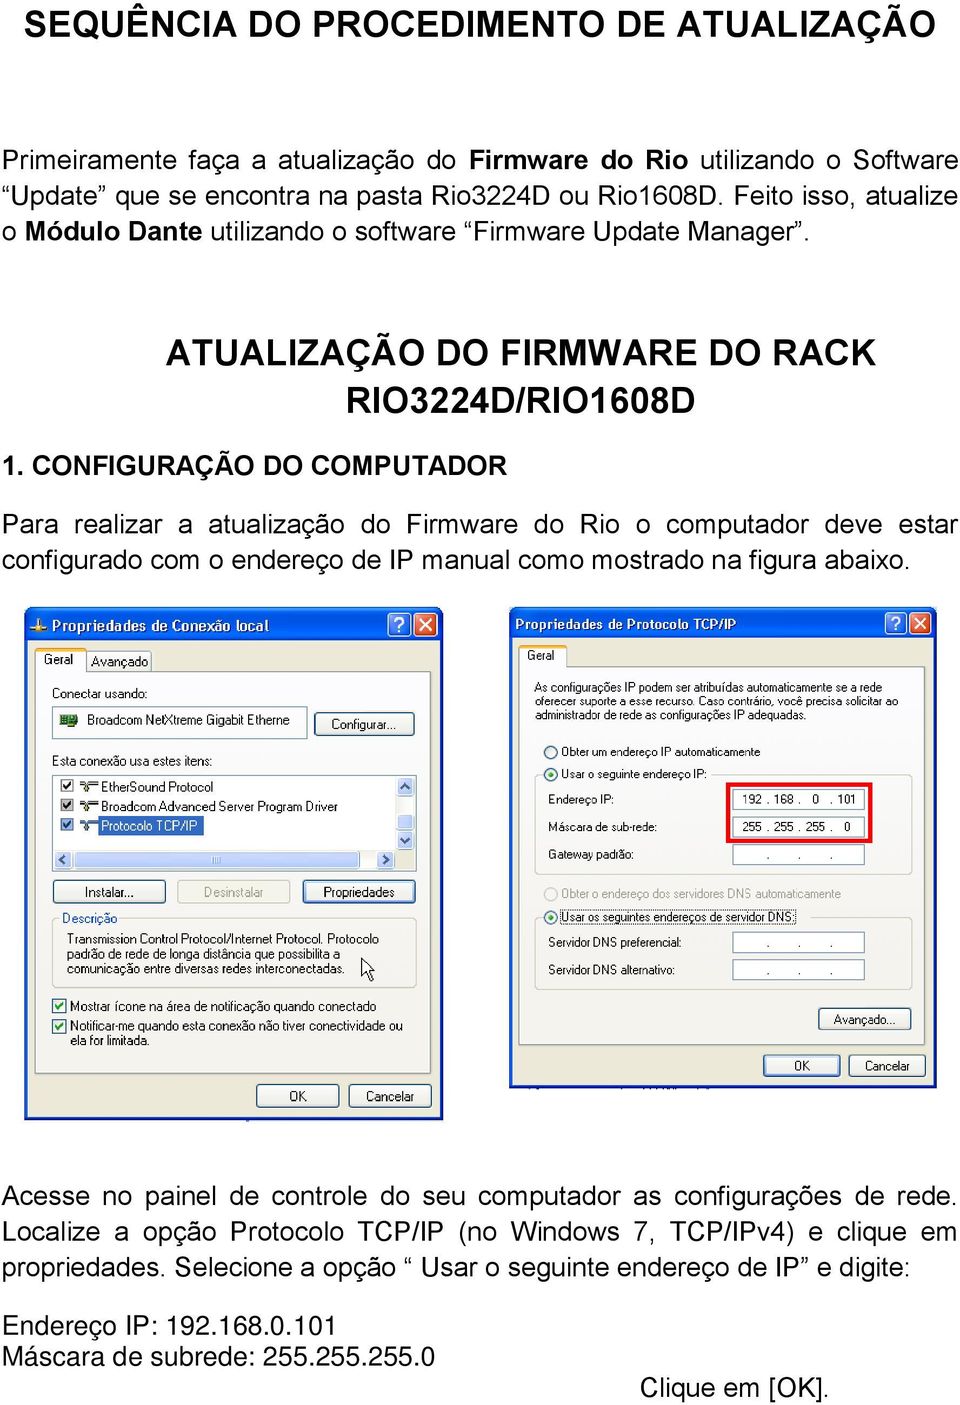 CONFIGURAÇÃO DO COMPUTADOR Para realizar a atualização do Firmware do Rio o computador deve estar configurado com o endereço de IP manual como mostrado na figura abaixo.